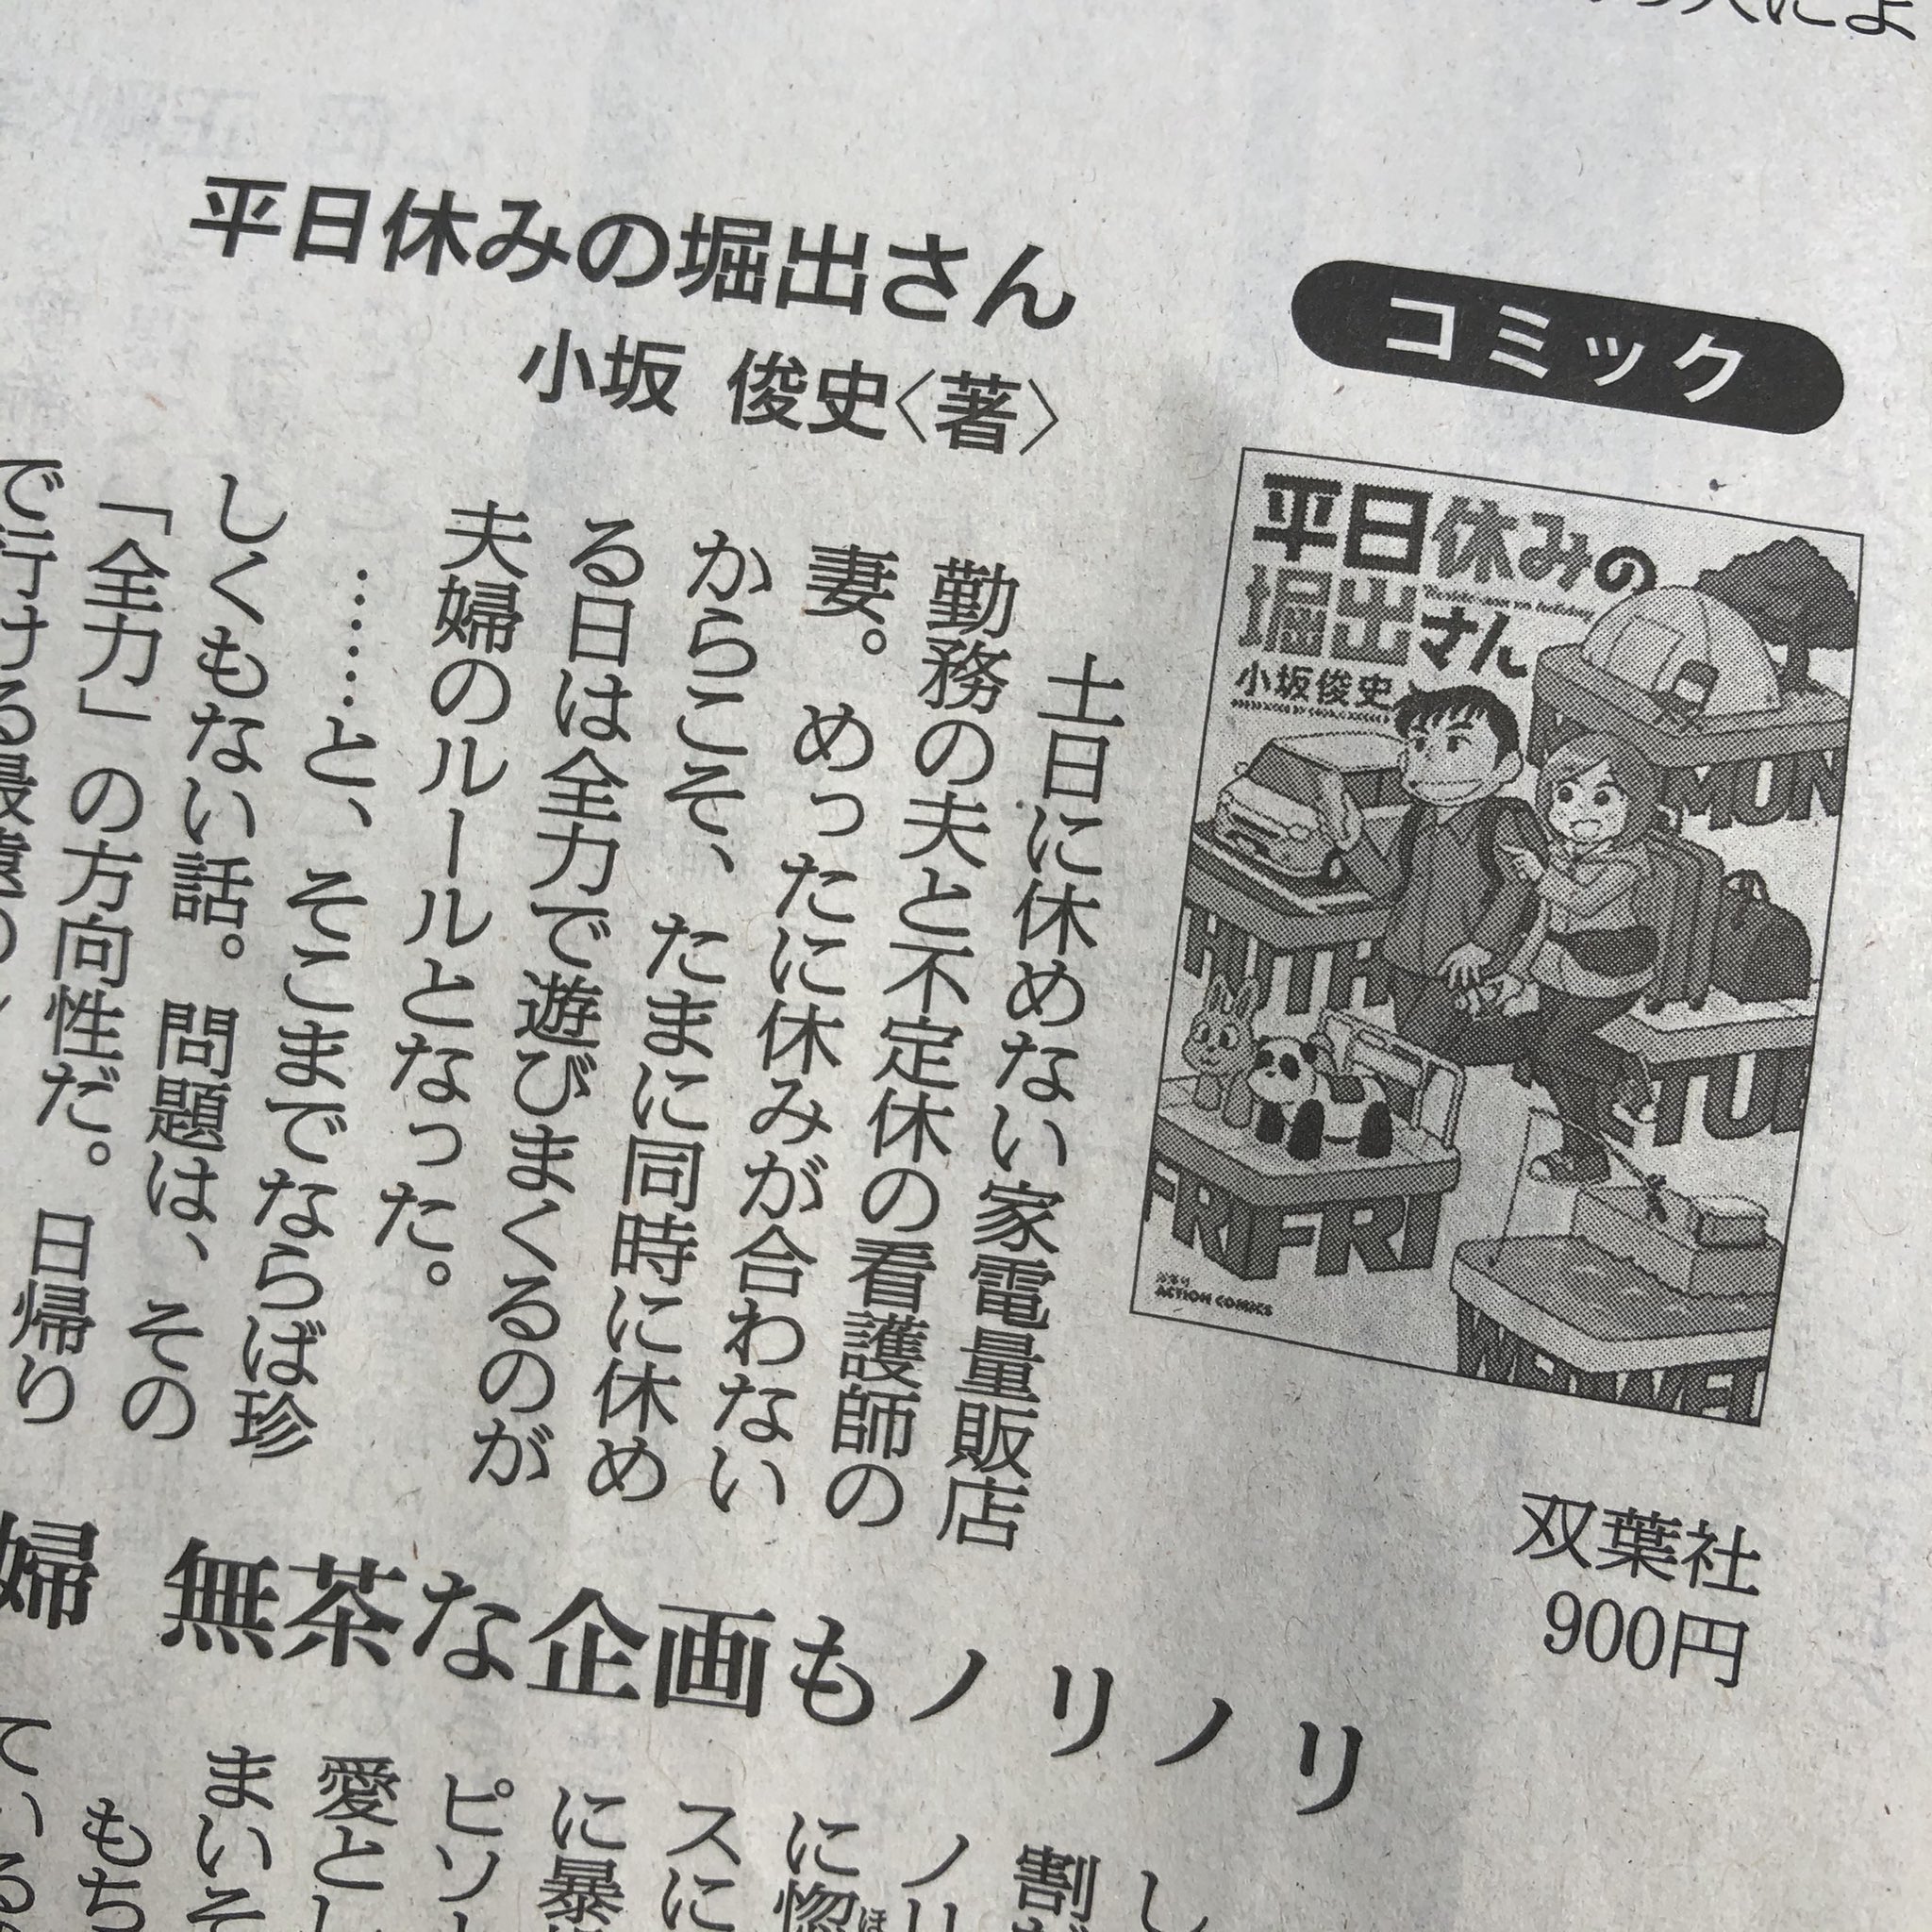 小坂俊史 本日 3月6日 の朝日新聞で 読書欄のコミック書評に 平日休みの堀出さん を取り上げていただいております ありがとうございます 堀出夫婦の奇行の数々を真面目に書き起こされるとなんか少し照れますね